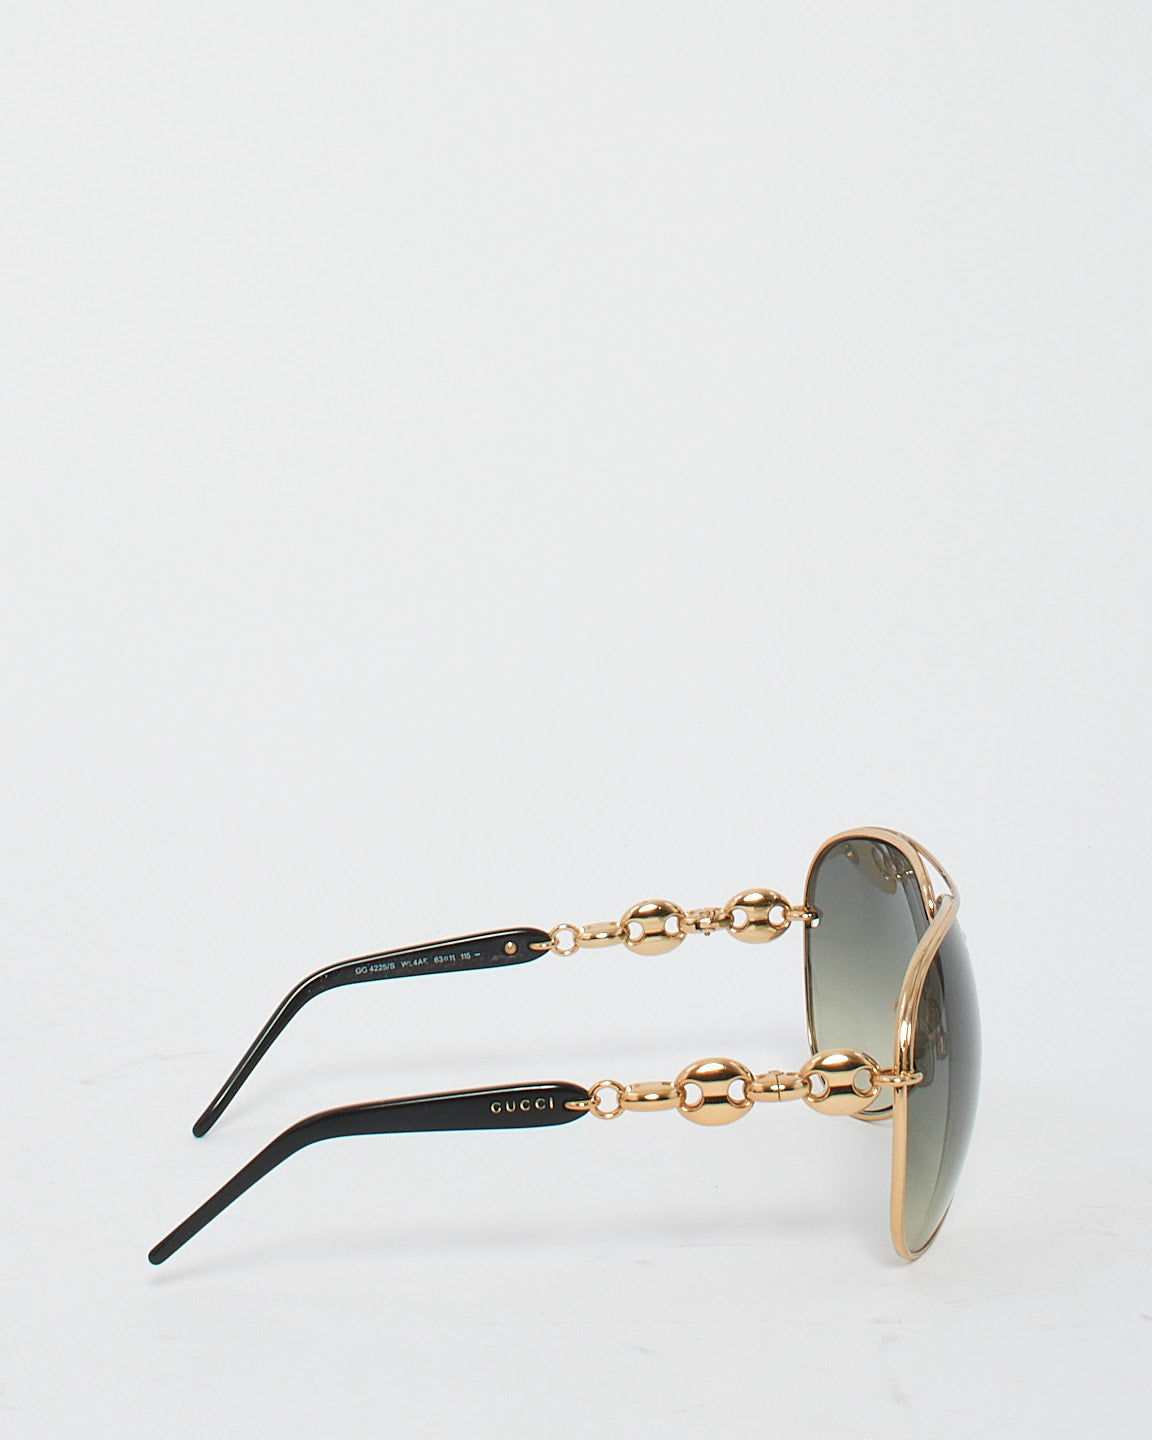 Gucci Lunettes de soleil aviateur à verres foncés dégradés avec chaîne dorée